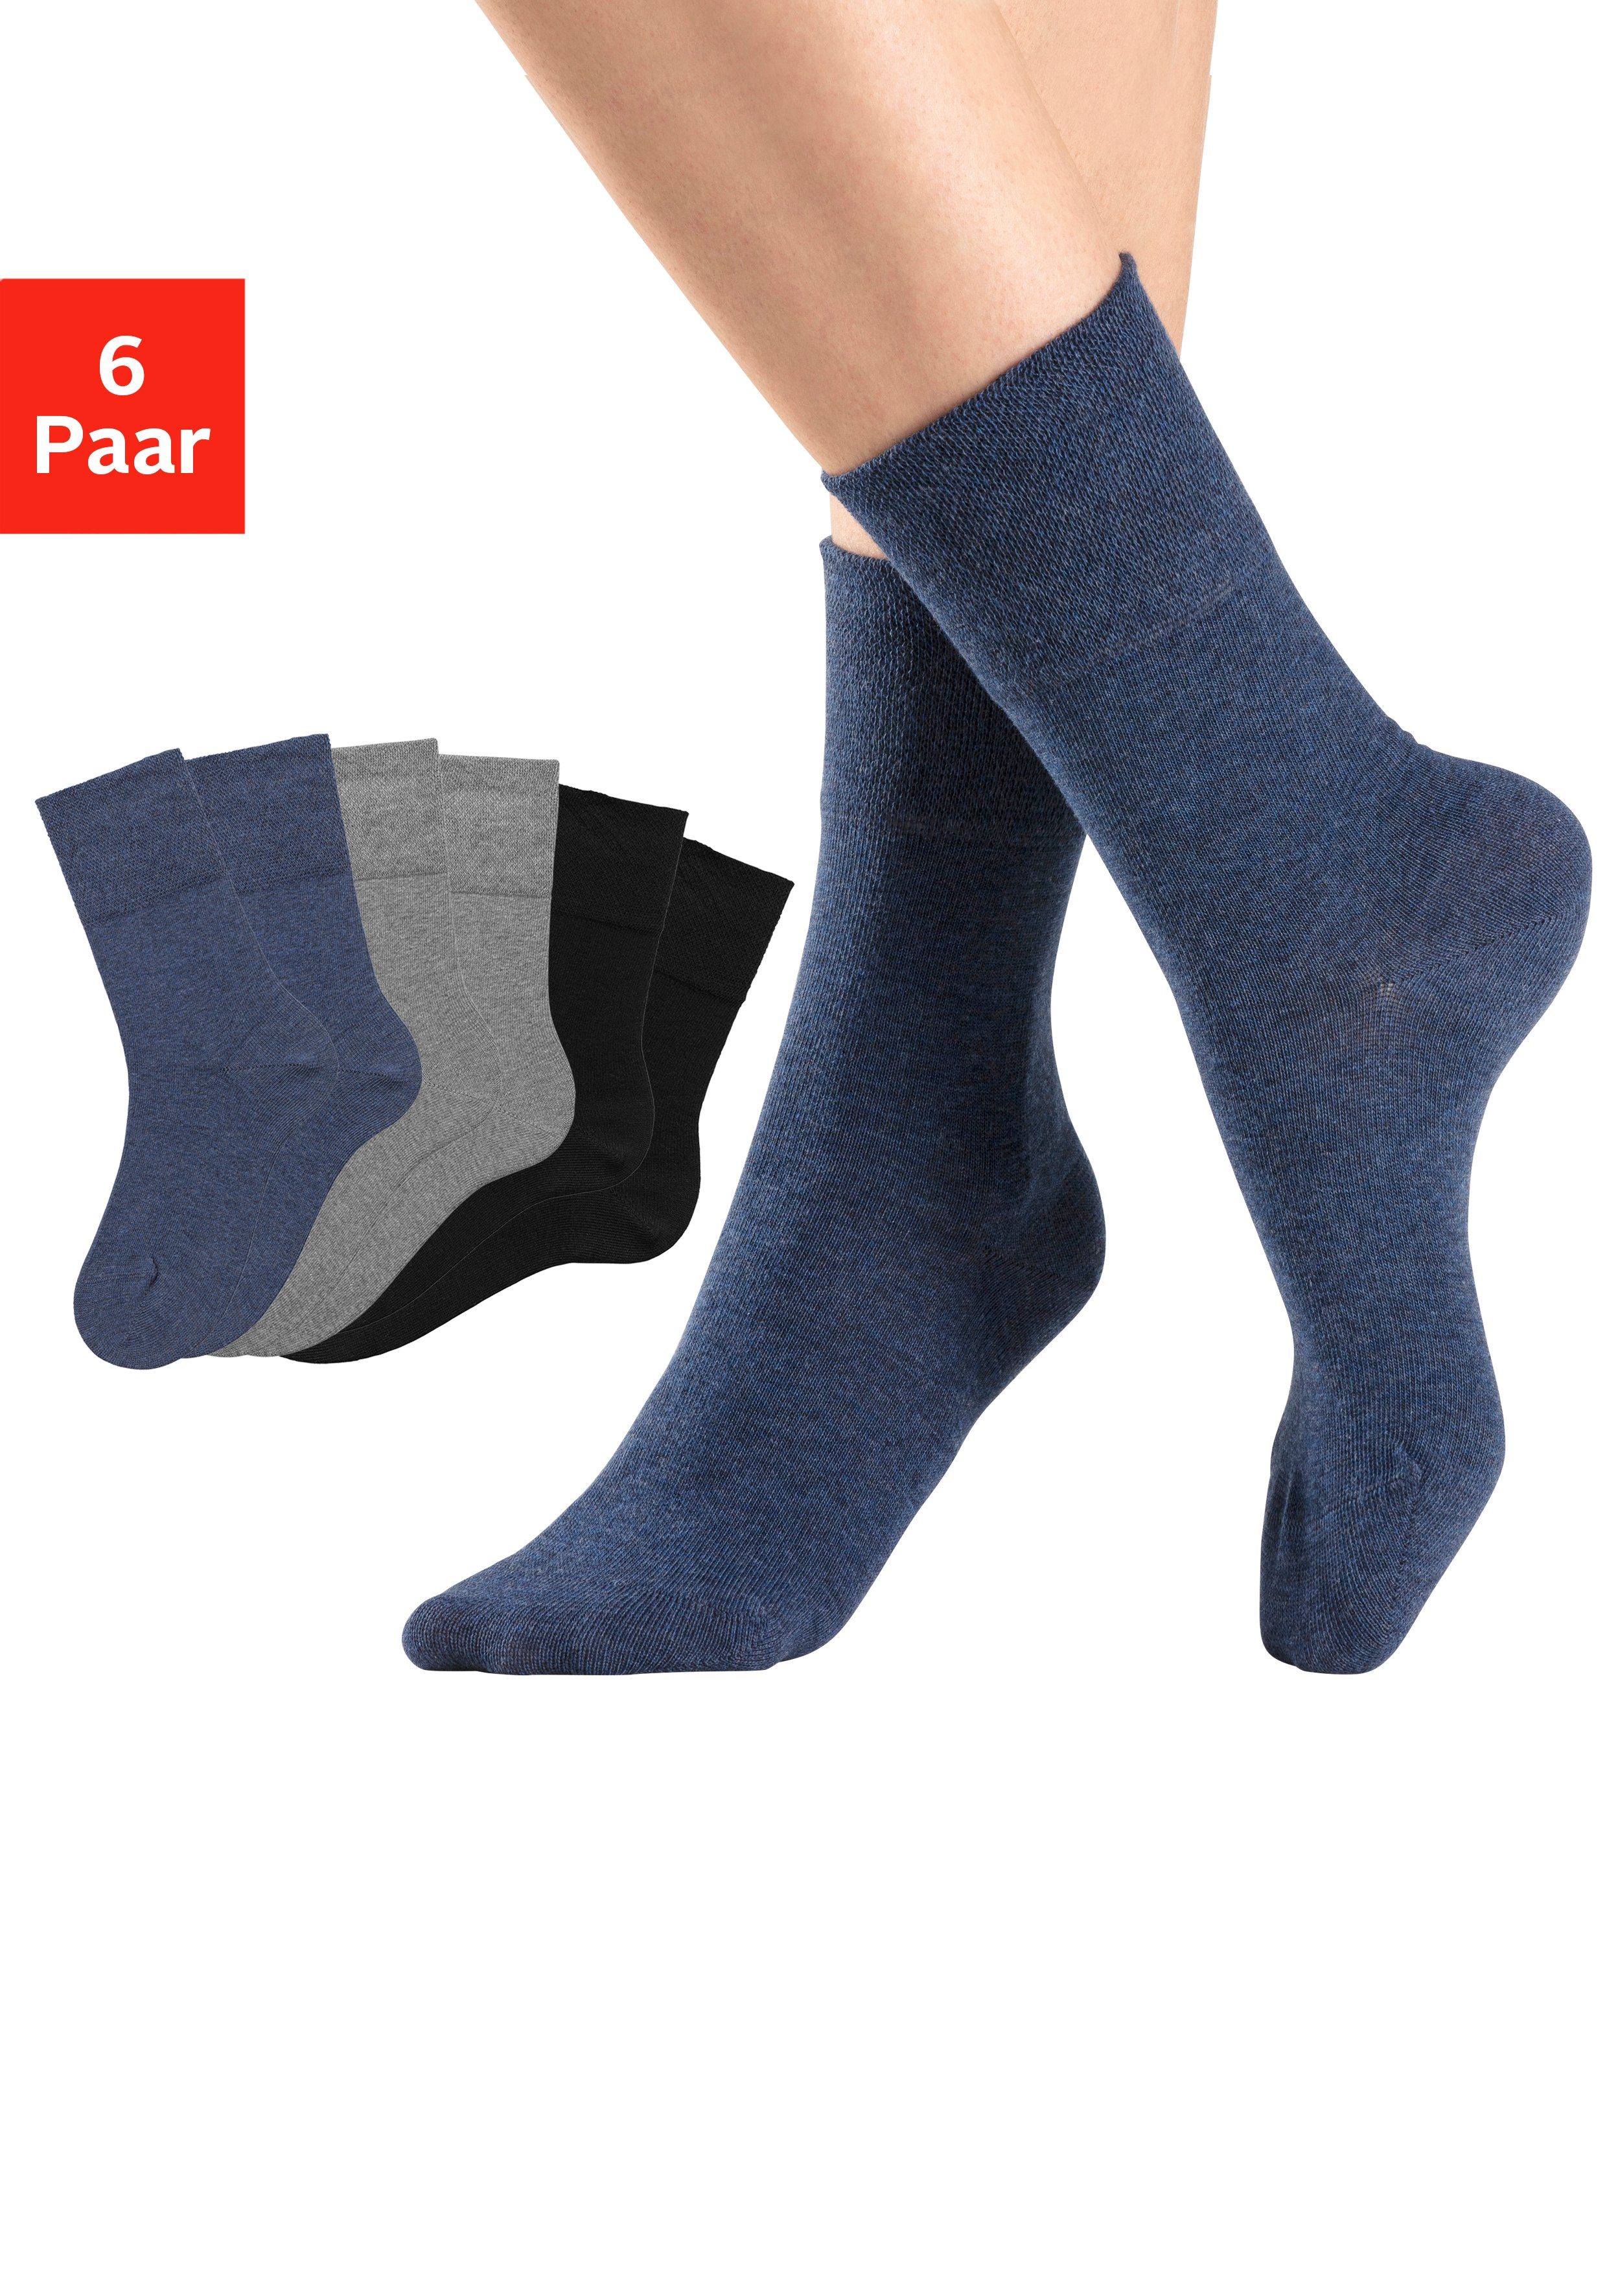 H.I.S Socken (6-Paar) mit Komfortbund auch für Diabetiker geeignet online  kaufen | OTTO